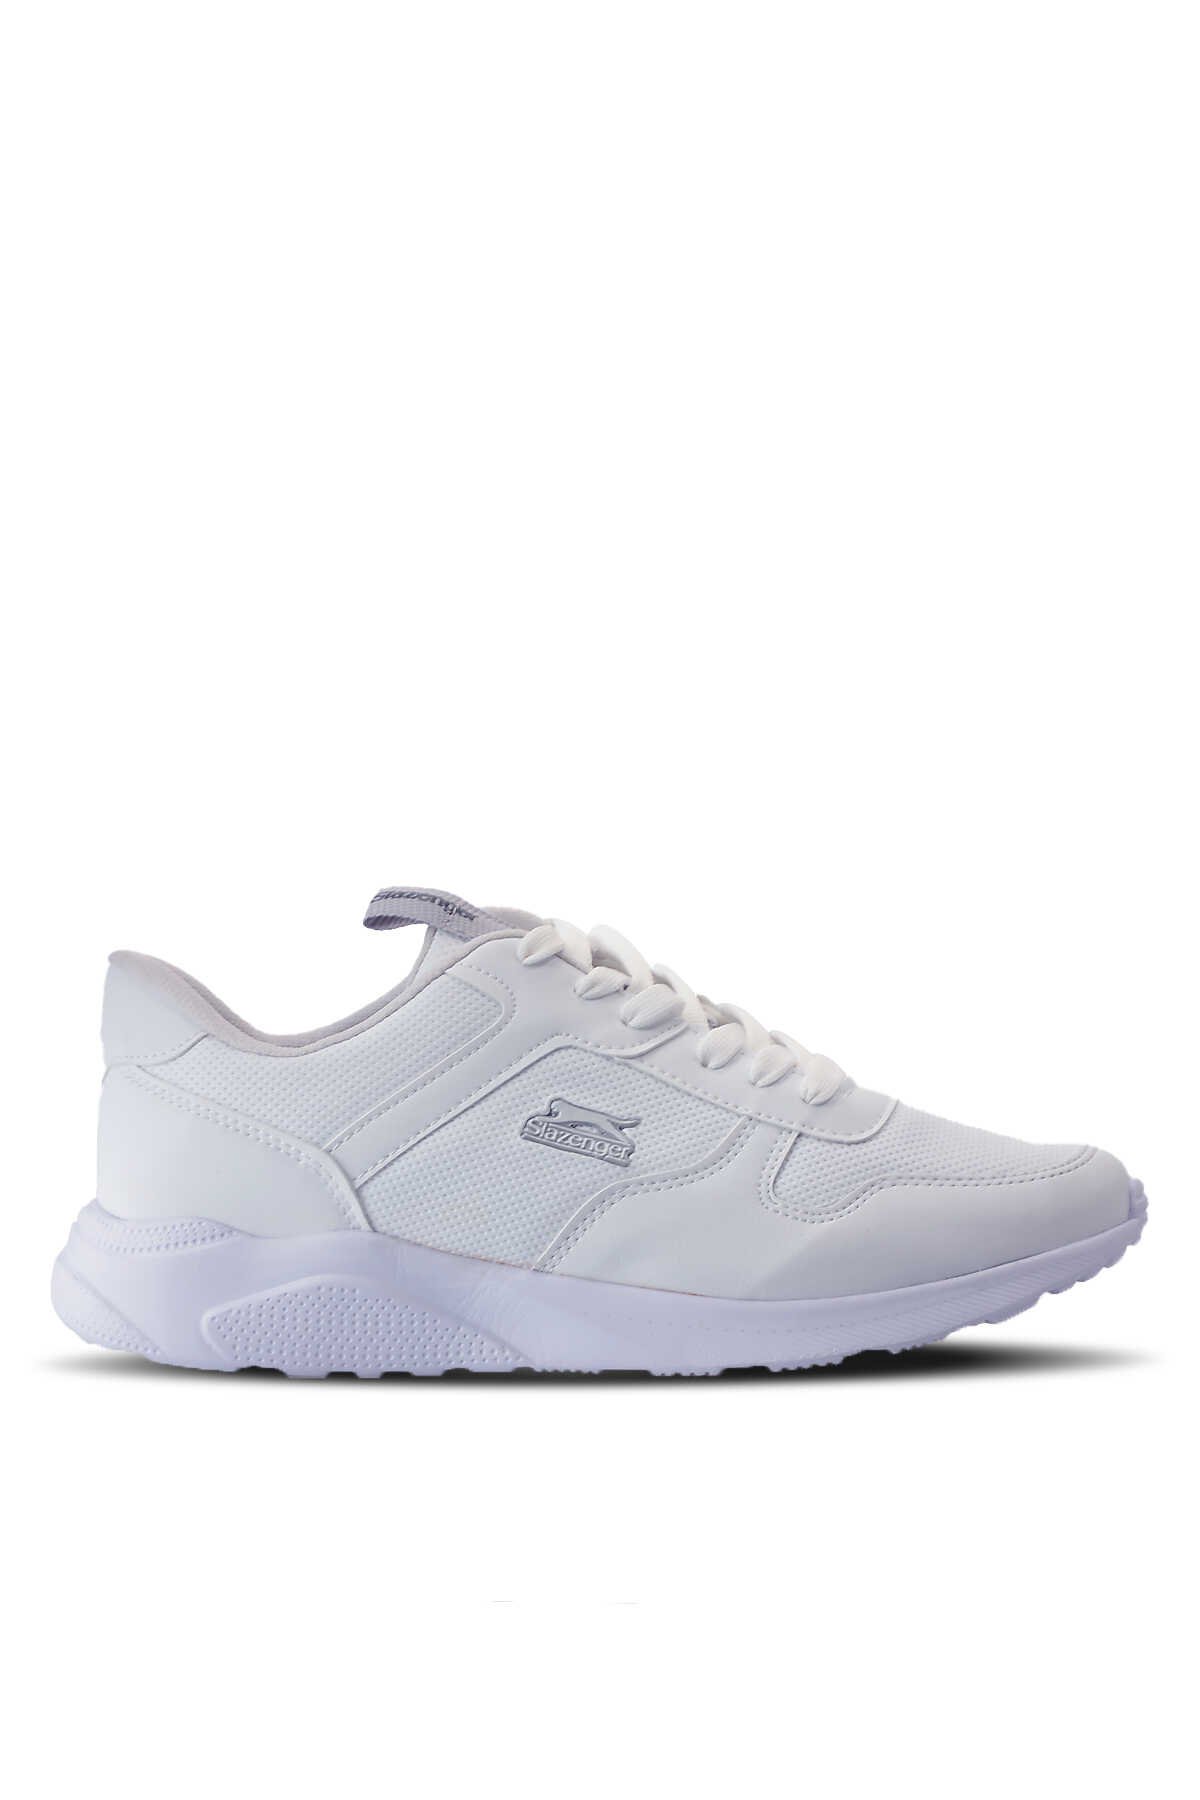 Slazenger - Slazenger ENRICA Sneaker Erkek Ayakkabı Beyaz